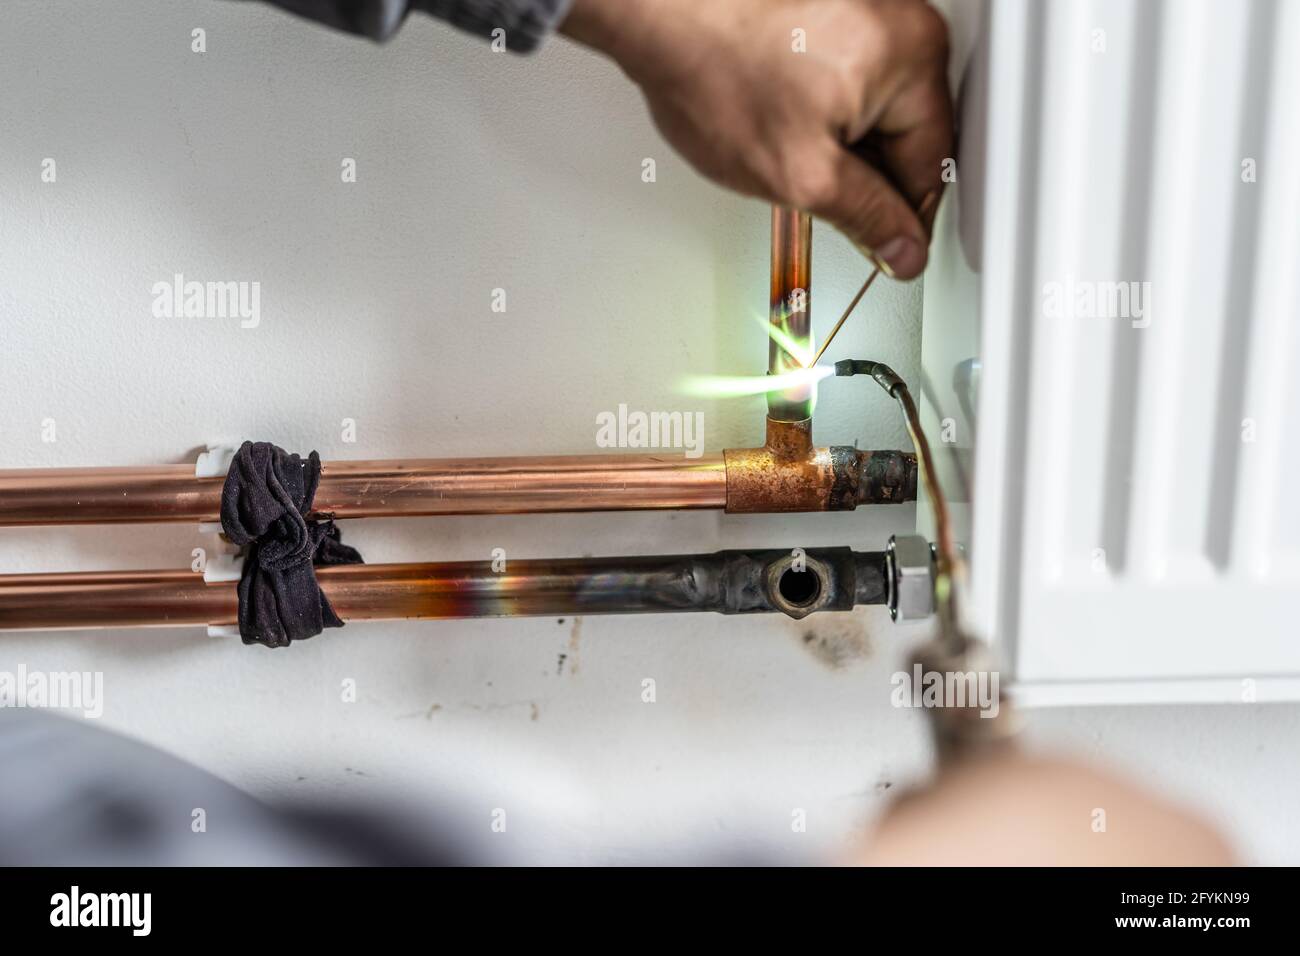 Nahaufnahme des Klempners ein Propan-Gasbrenner, Hitze Lot zu einer  Kapillare mit Gelenken auf Kupfer Sanitär-Rohre Rohrleitungen Schläuche  zusammen Löten Stockfotografie - Alamy